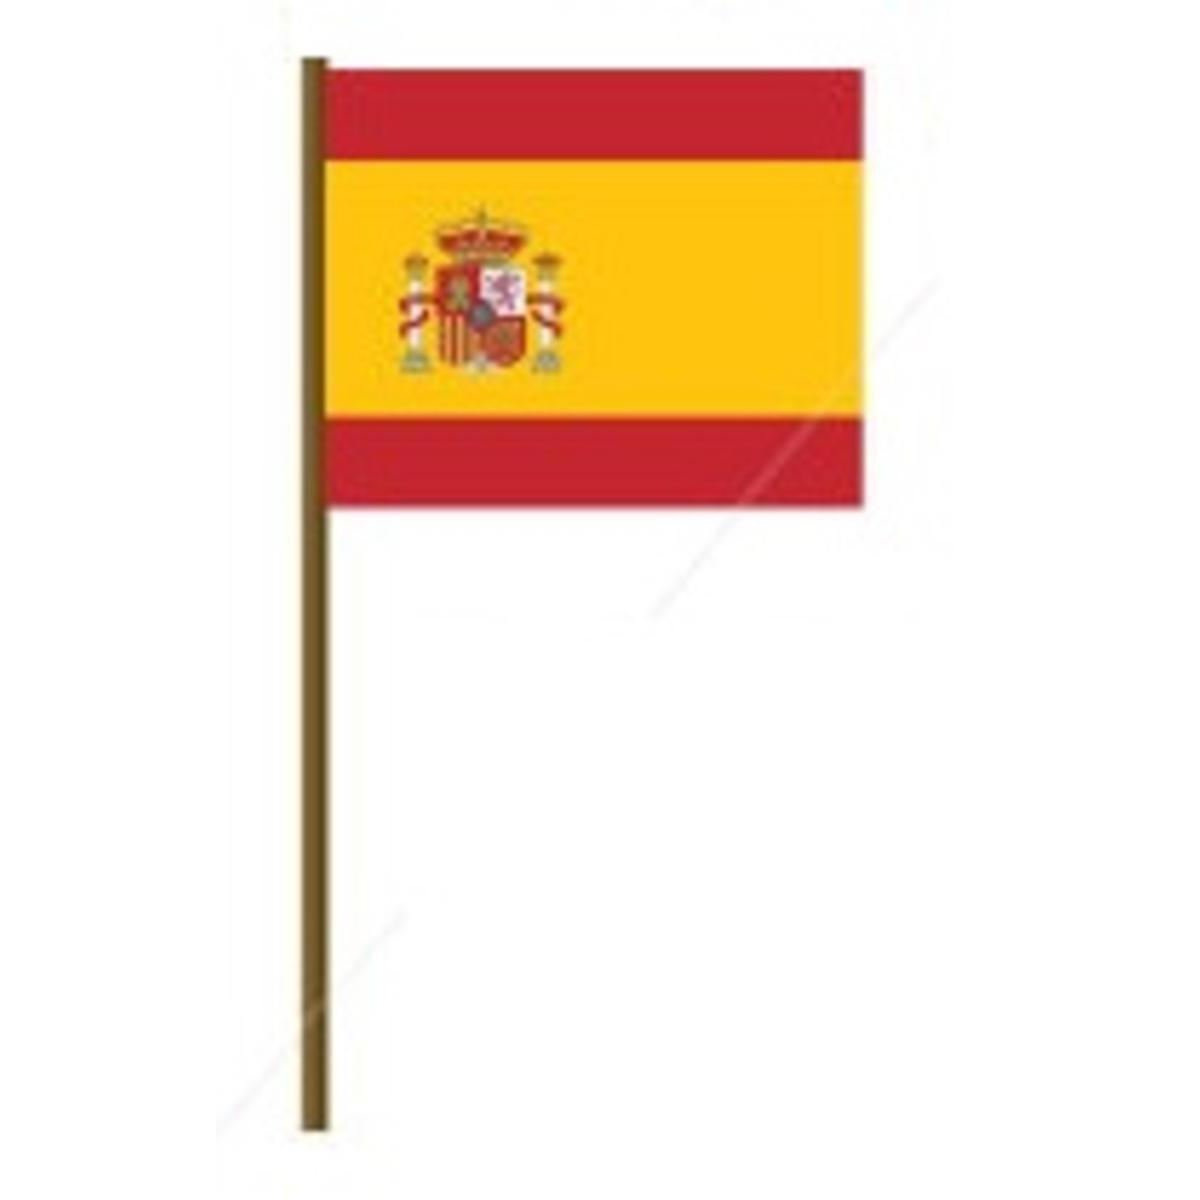 Drapeau sur manche Espagne - L 45 x H 50 x l 30 cm - Rouge, jaune